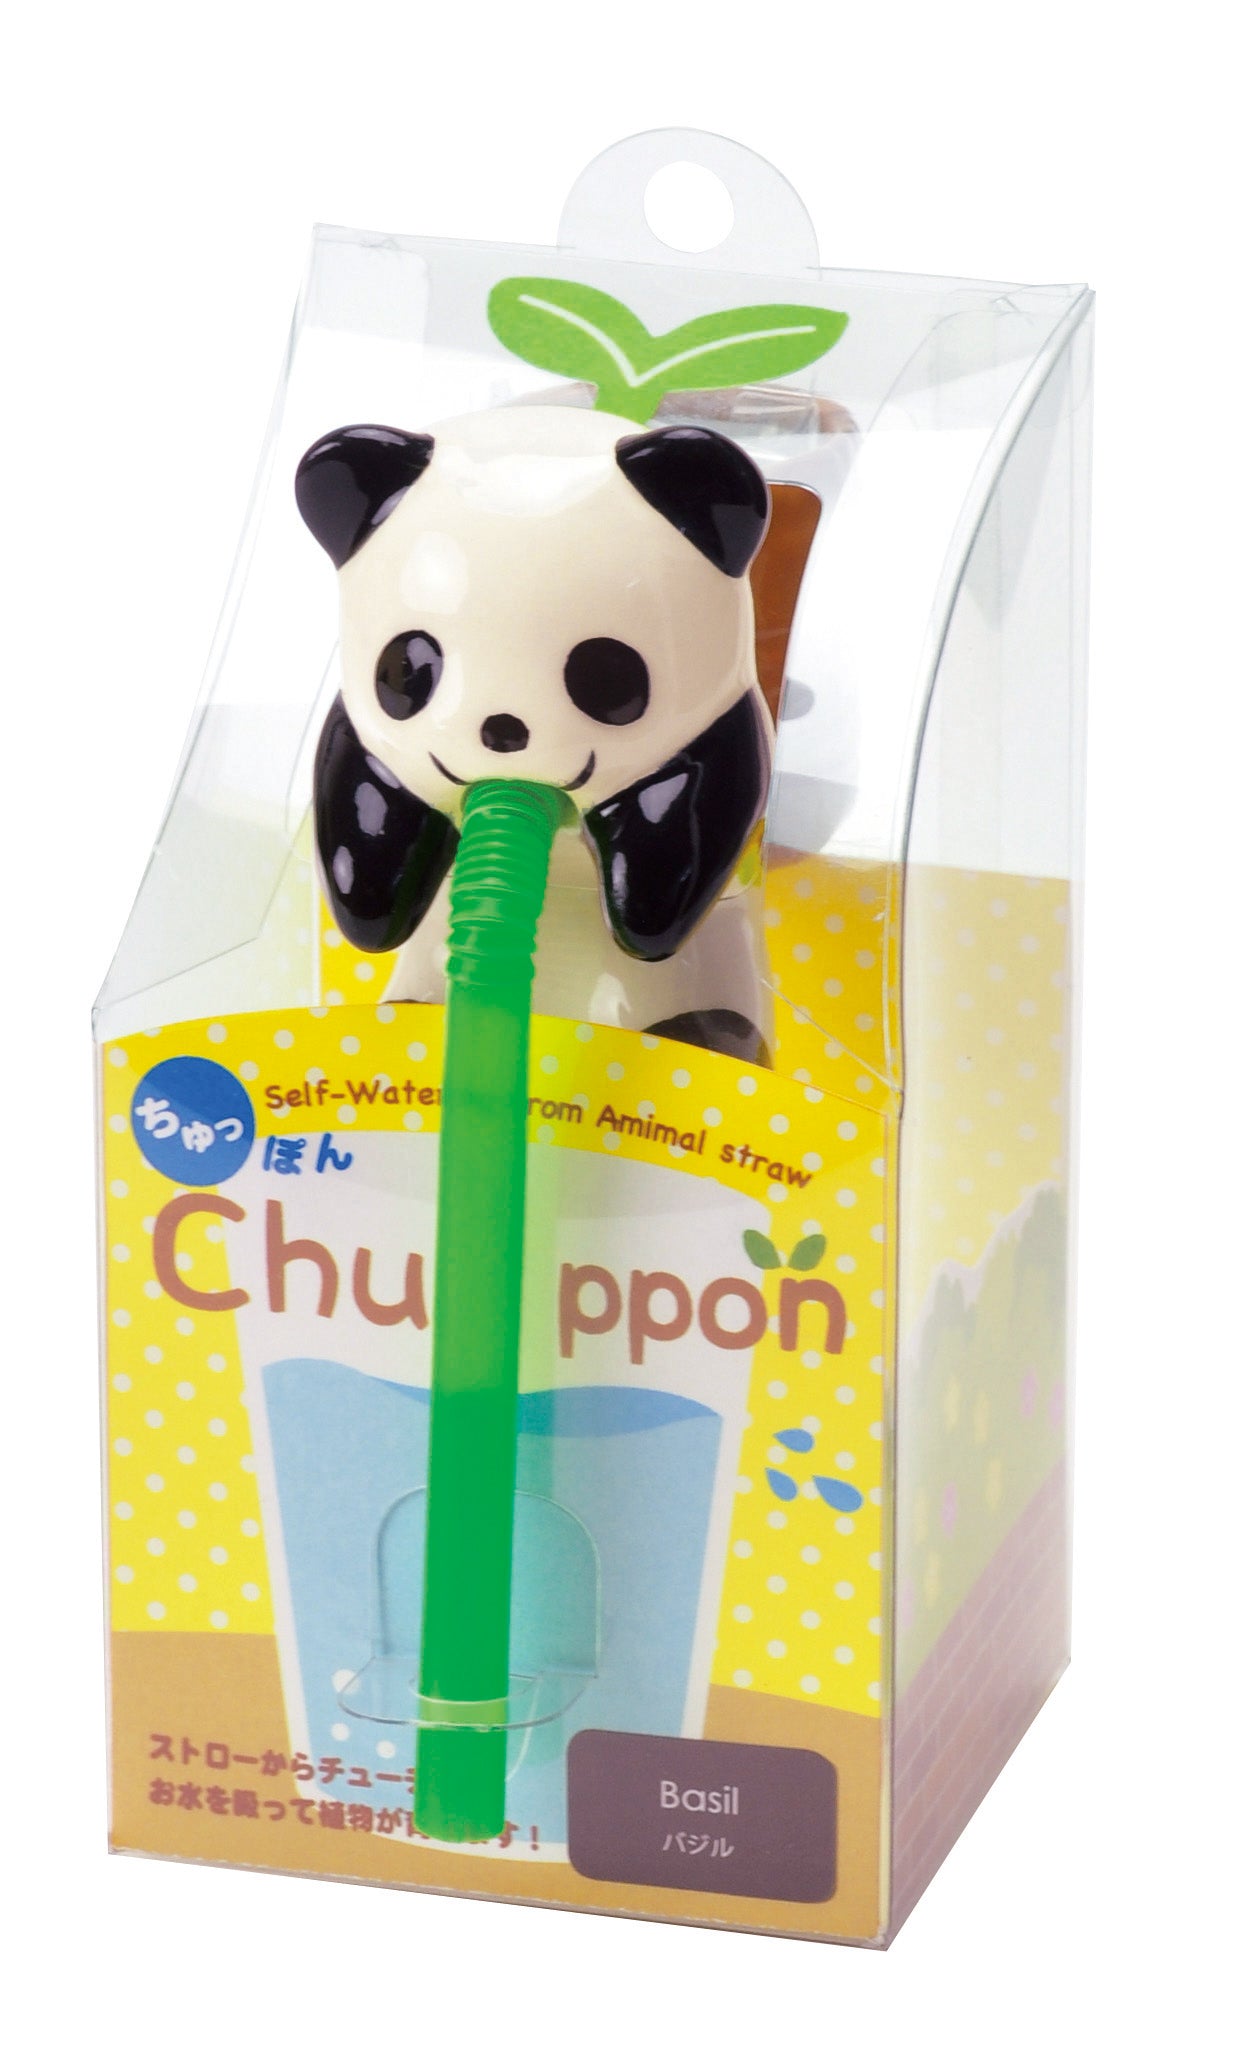 Chuppon可愛動物自動吸水小盆栽 - 羅勒/薄荷葉/四葉草